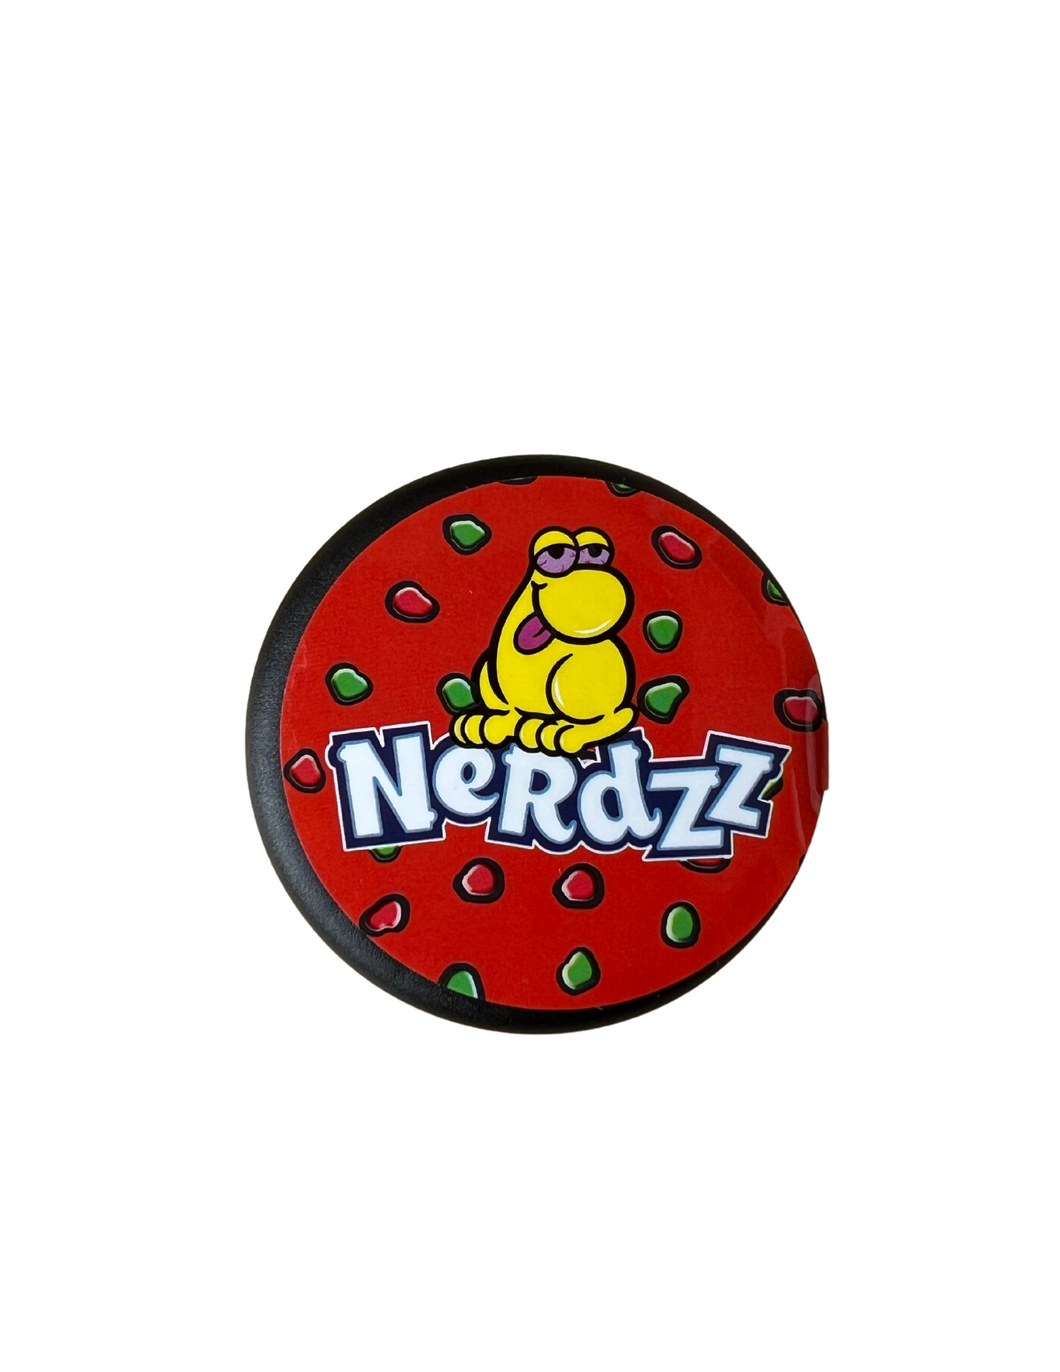 Nerdzz - Gary Payton (House Crumble)